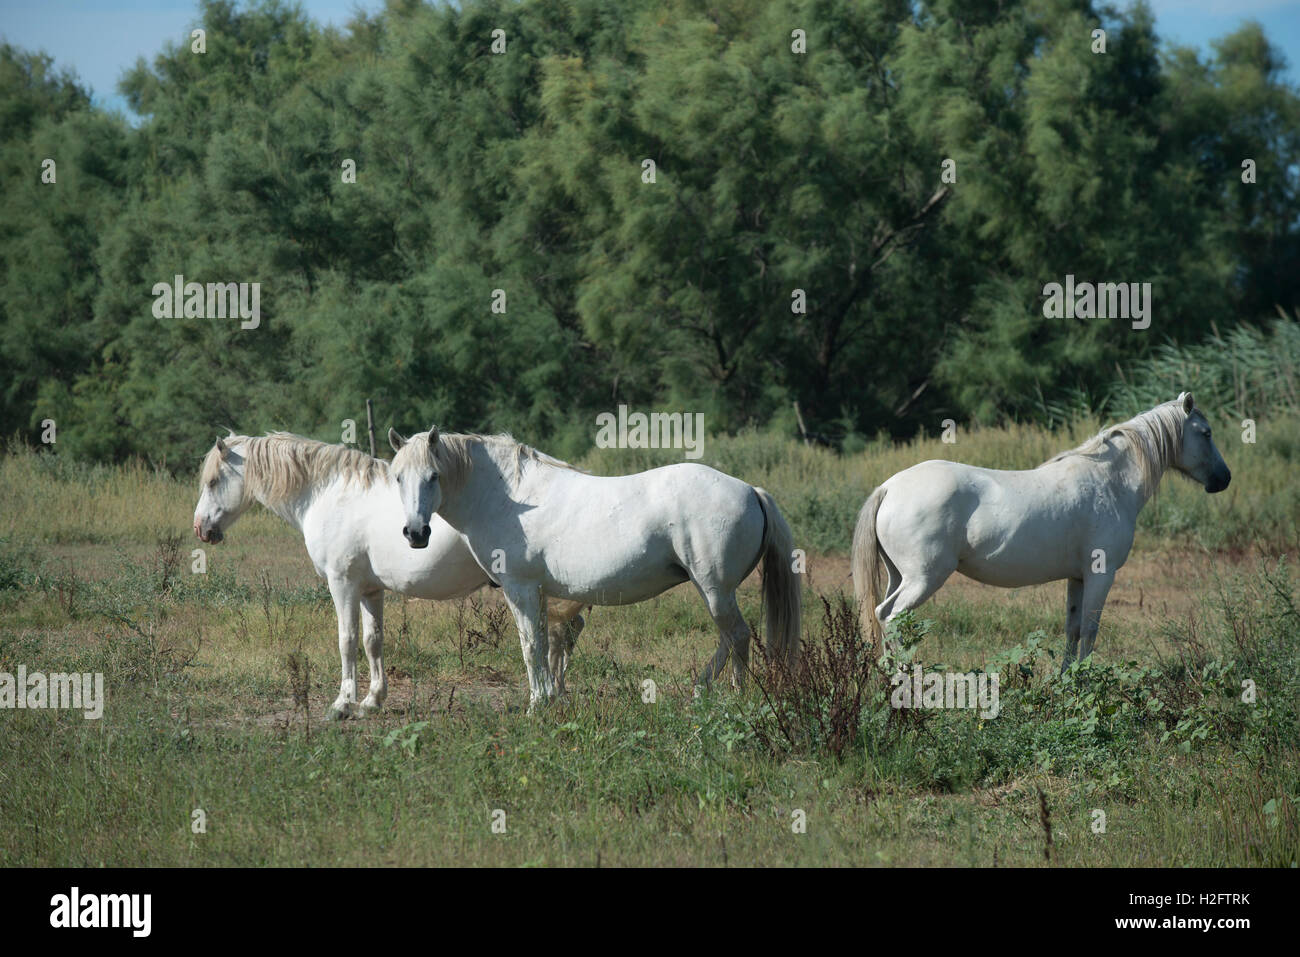 Trois chevaux camargue, indigènes de la région de la Camargue, dans le sud de la France Banque D'Images